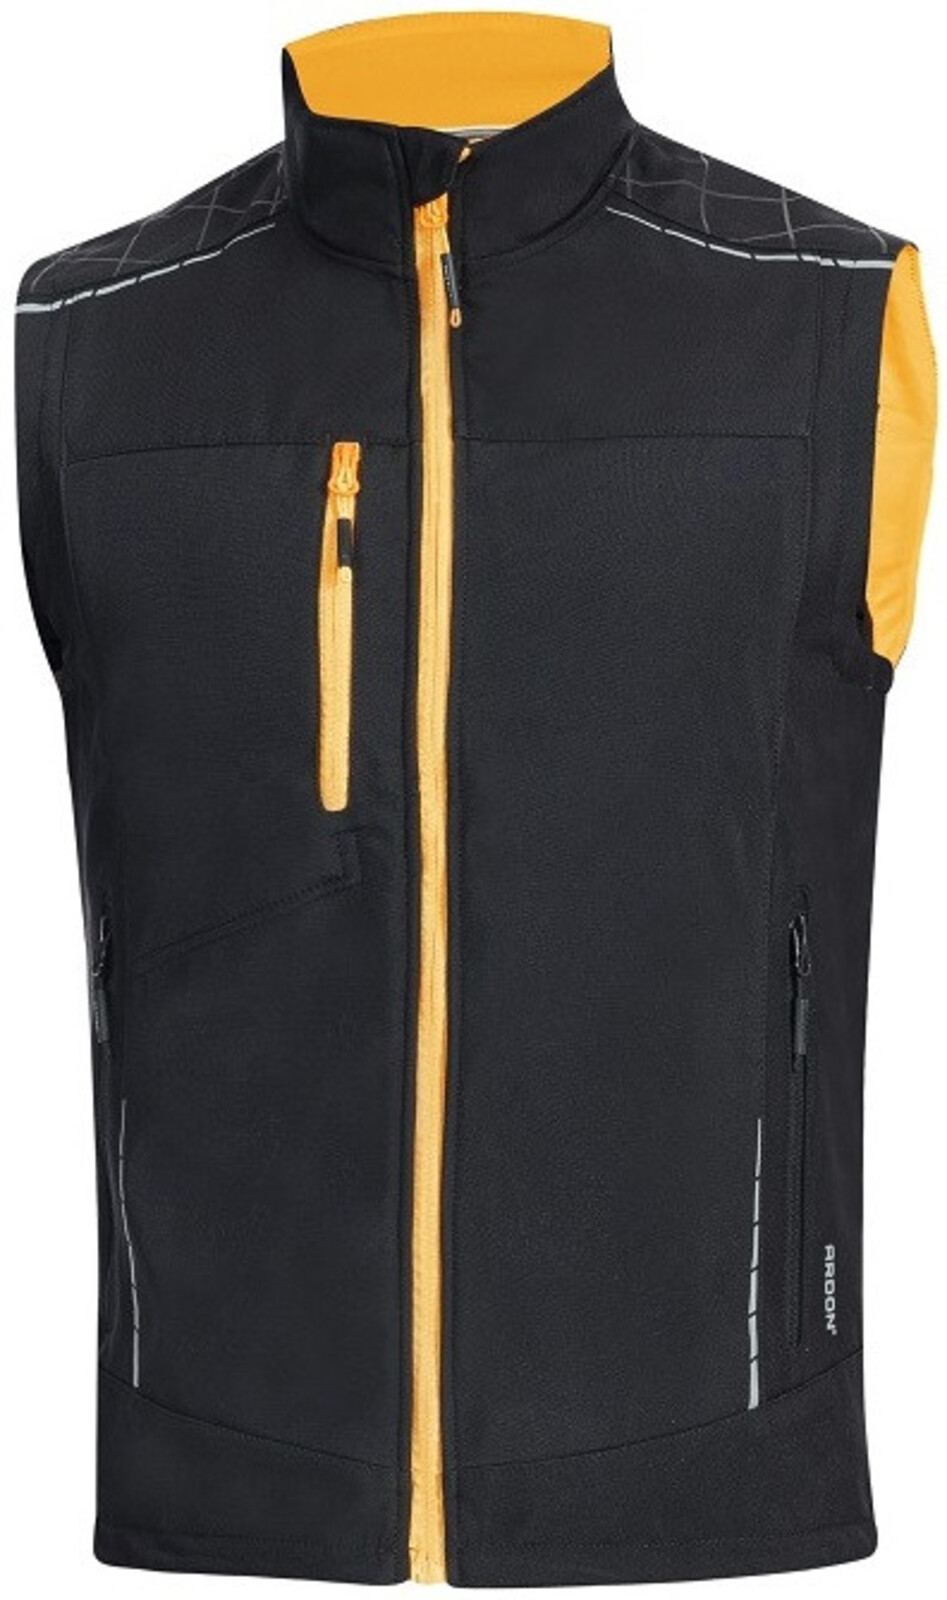 Pánska softshellová vesta Ardon Vision - veľkosť: XS, farba: čierna/oranžová